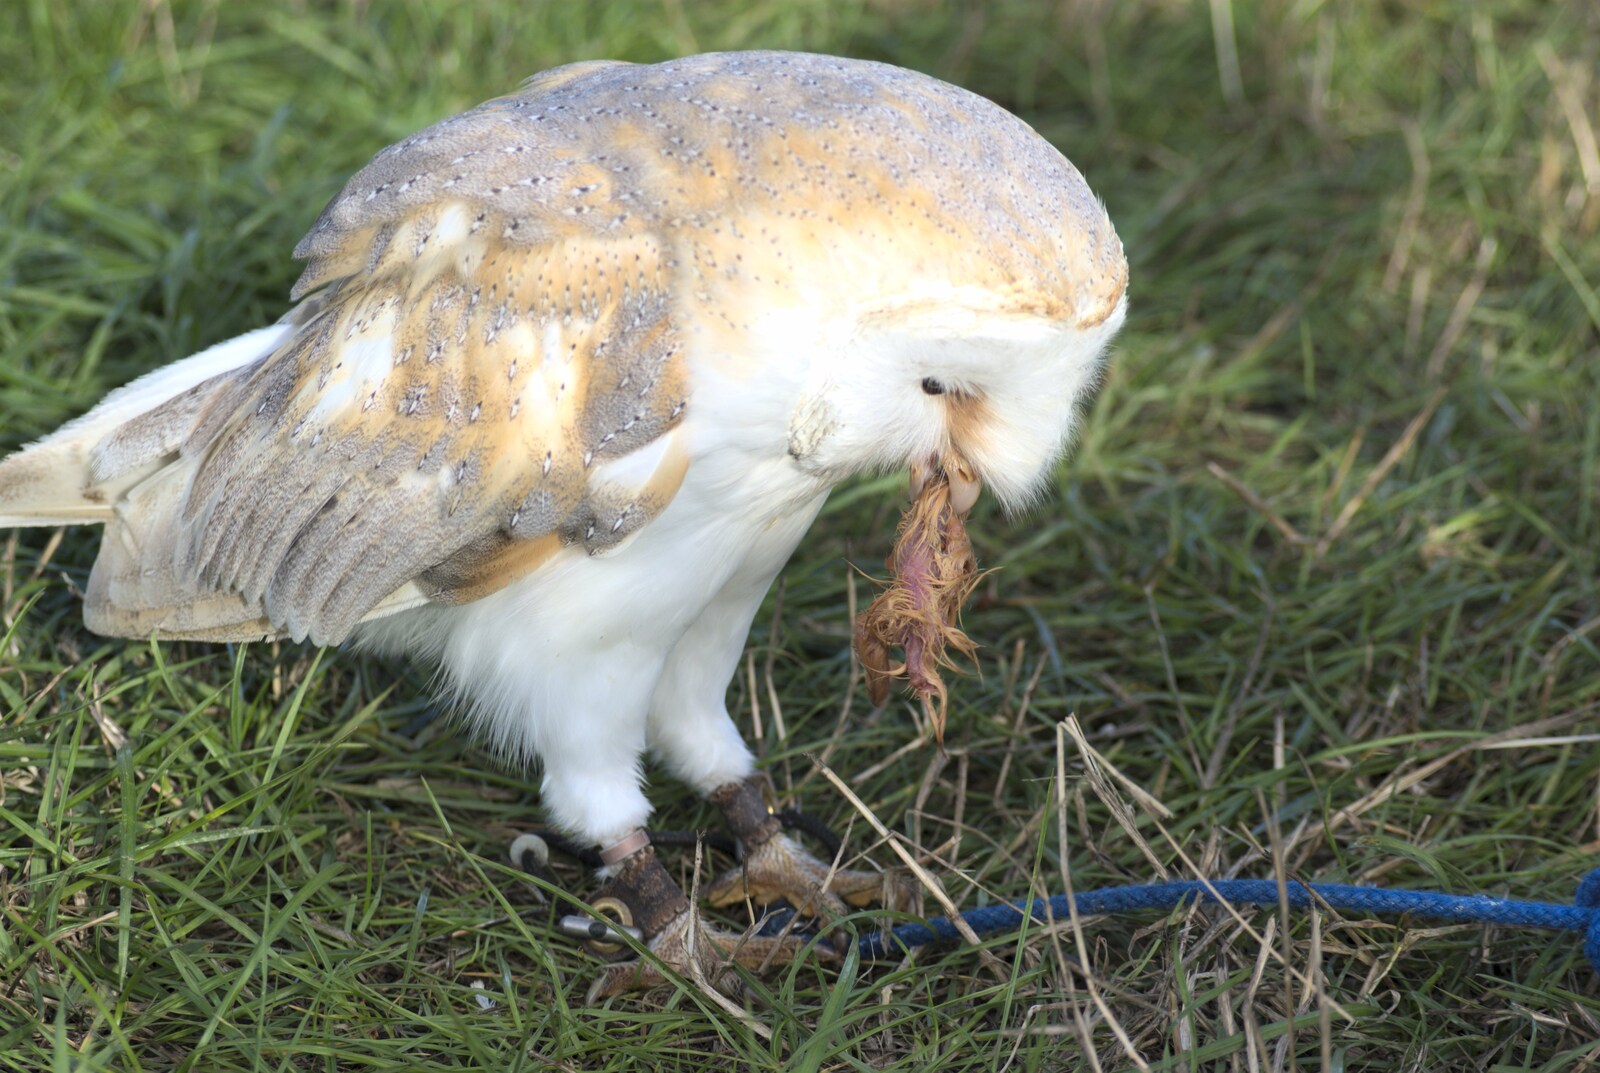 An owl eats a bird head from The Eye Show, Palgrave, Suffolk - 30th August 2010